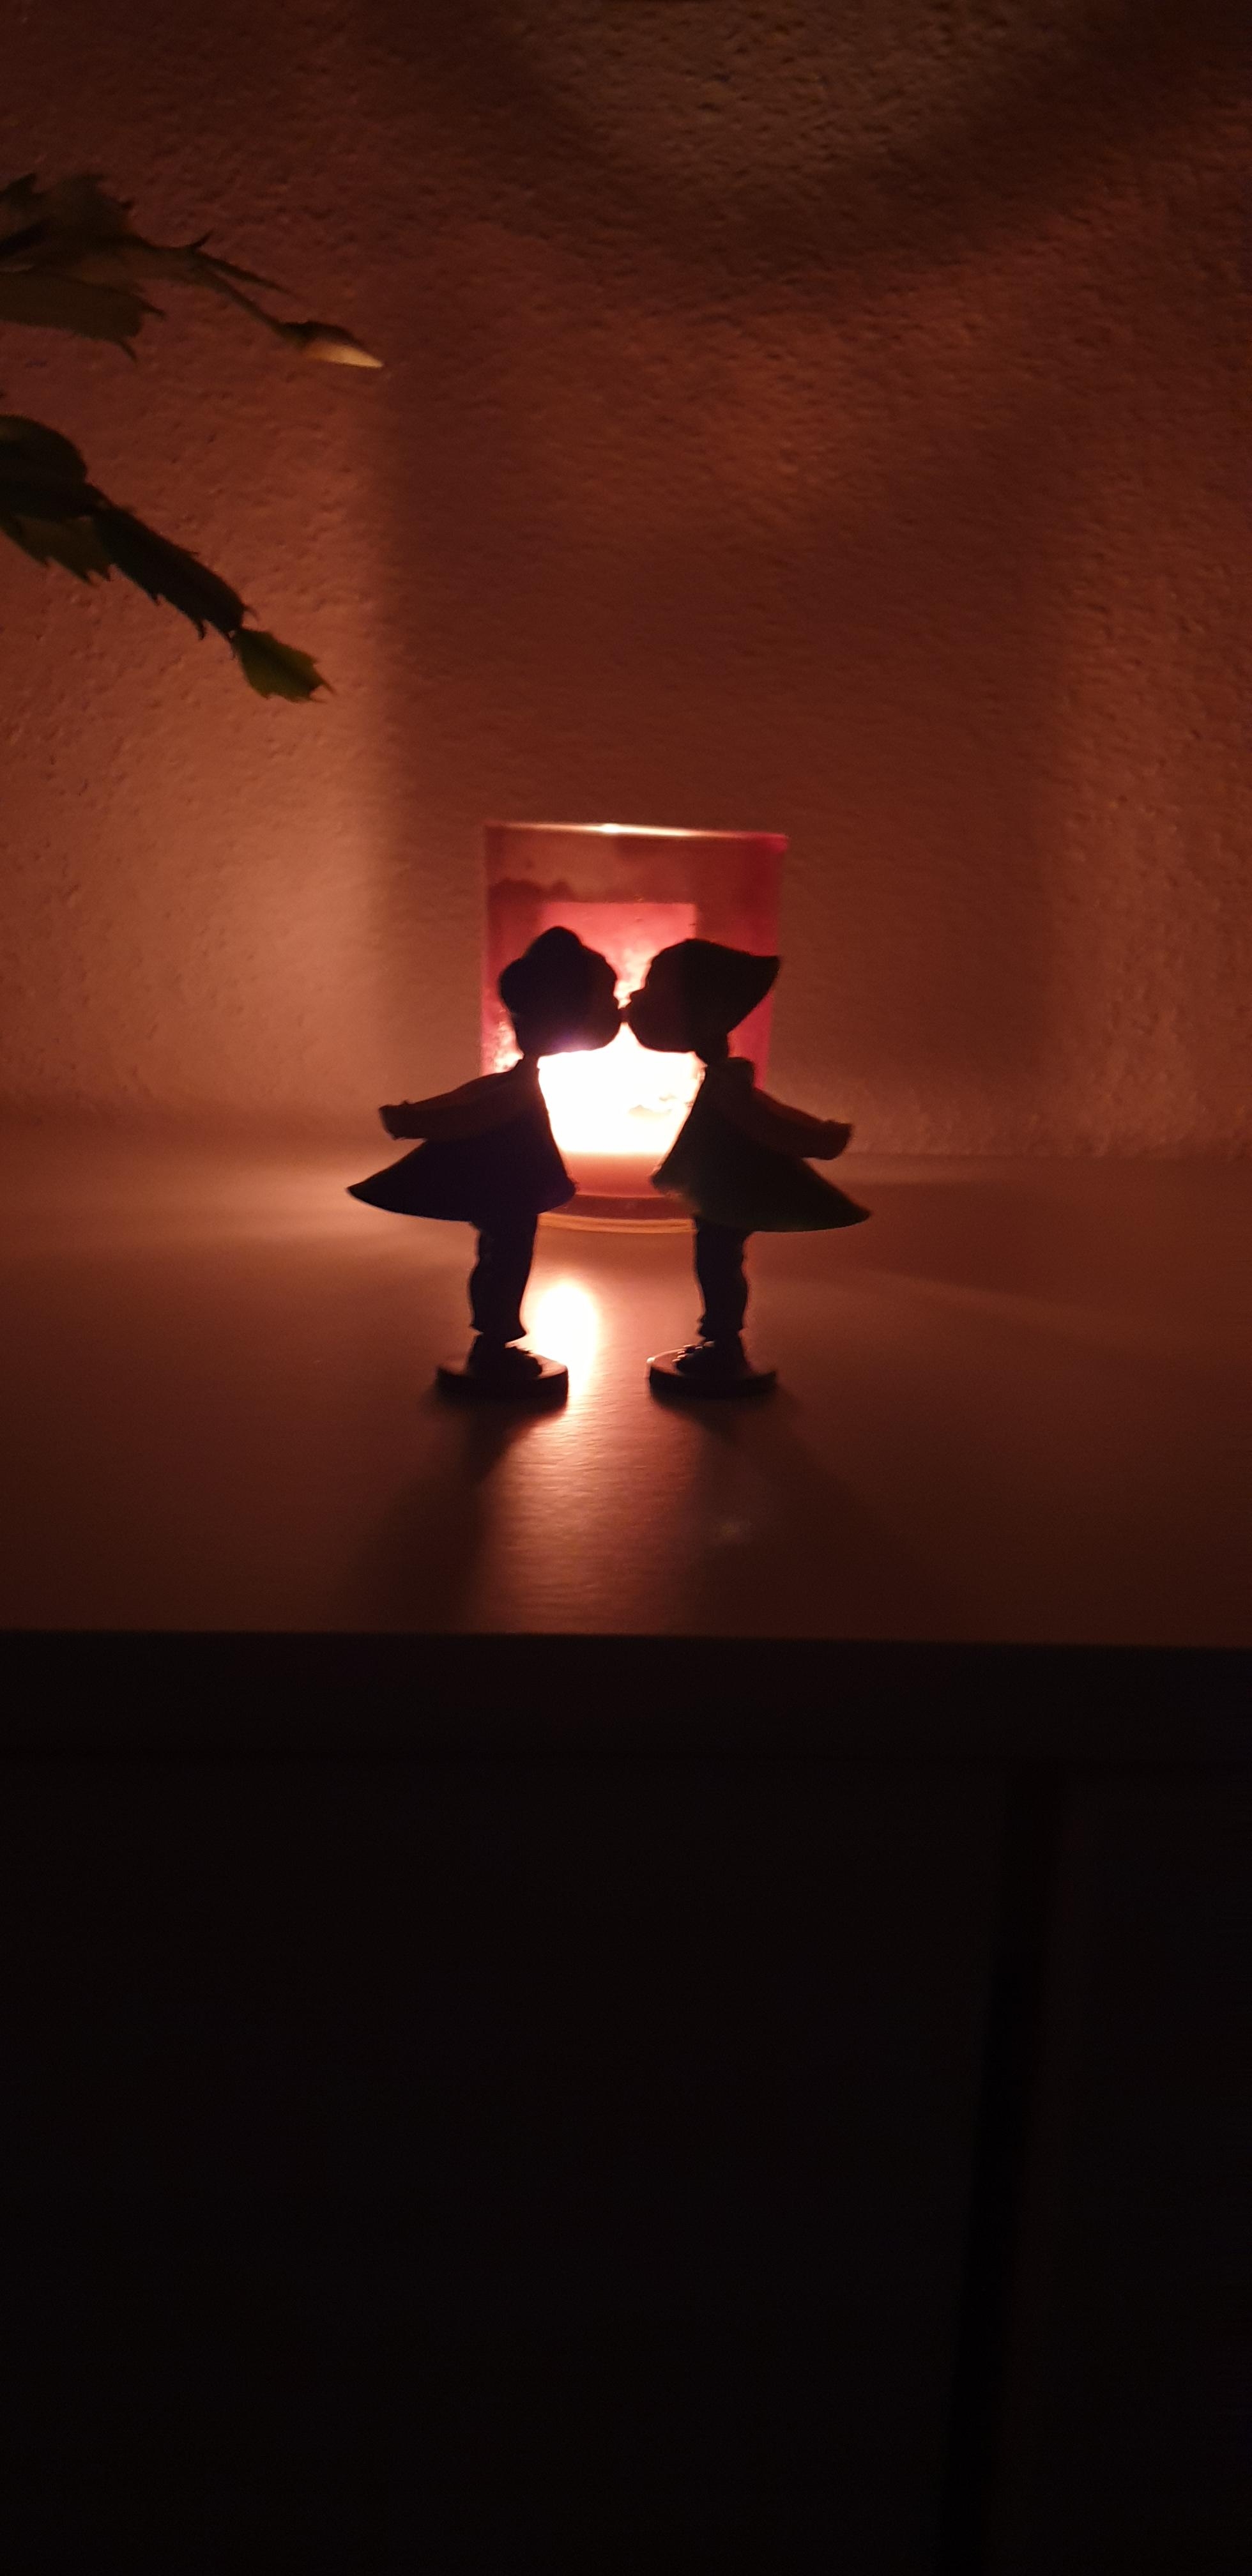 Wenn der Abend beginnt und die Kerzen alles in einen romantischen Augenblick verwandeln. #küssendespärchen #kerzenschein